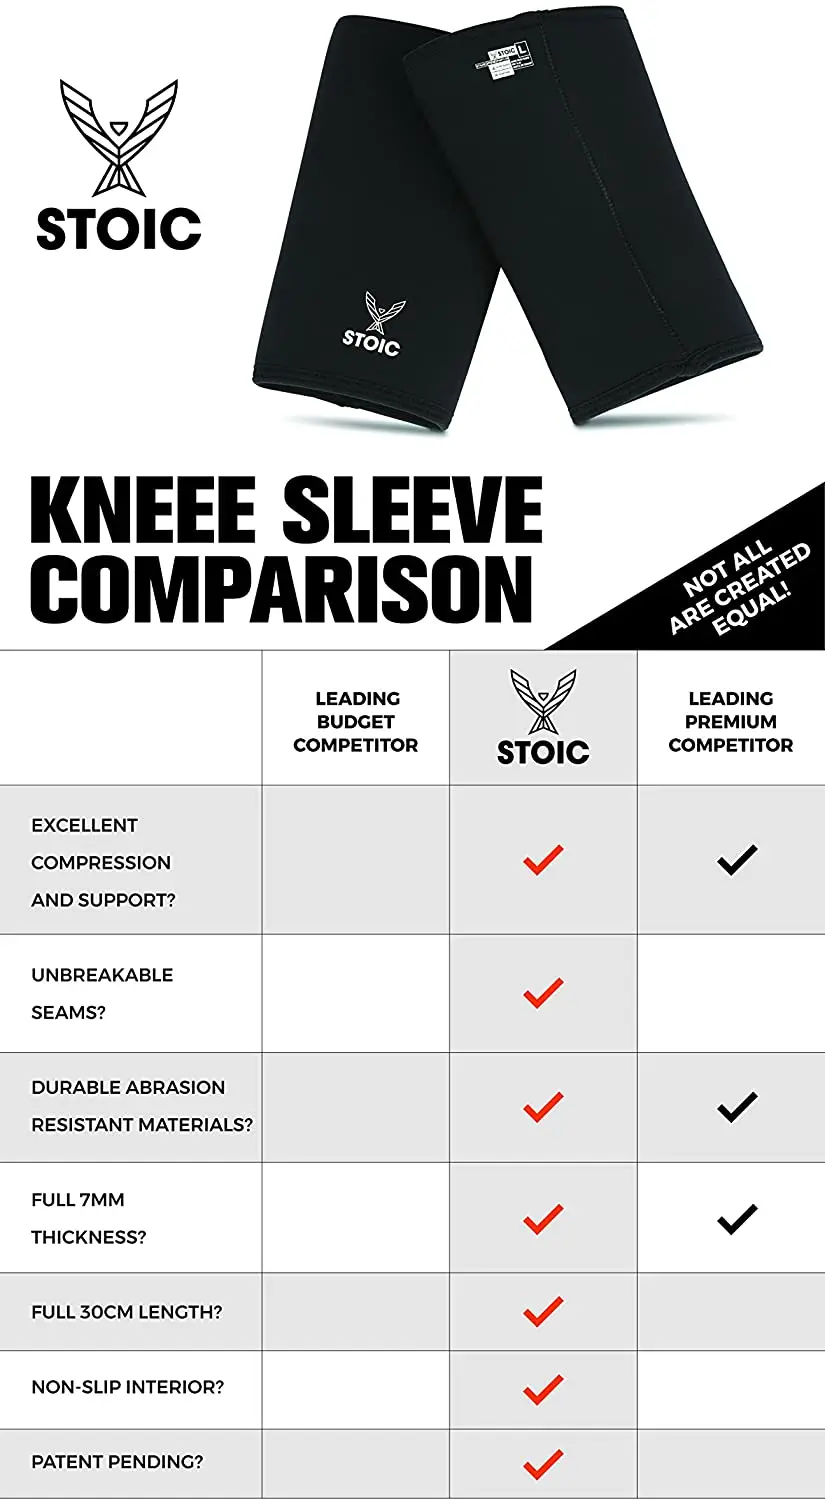 Stoic vs sbd knee sleeves